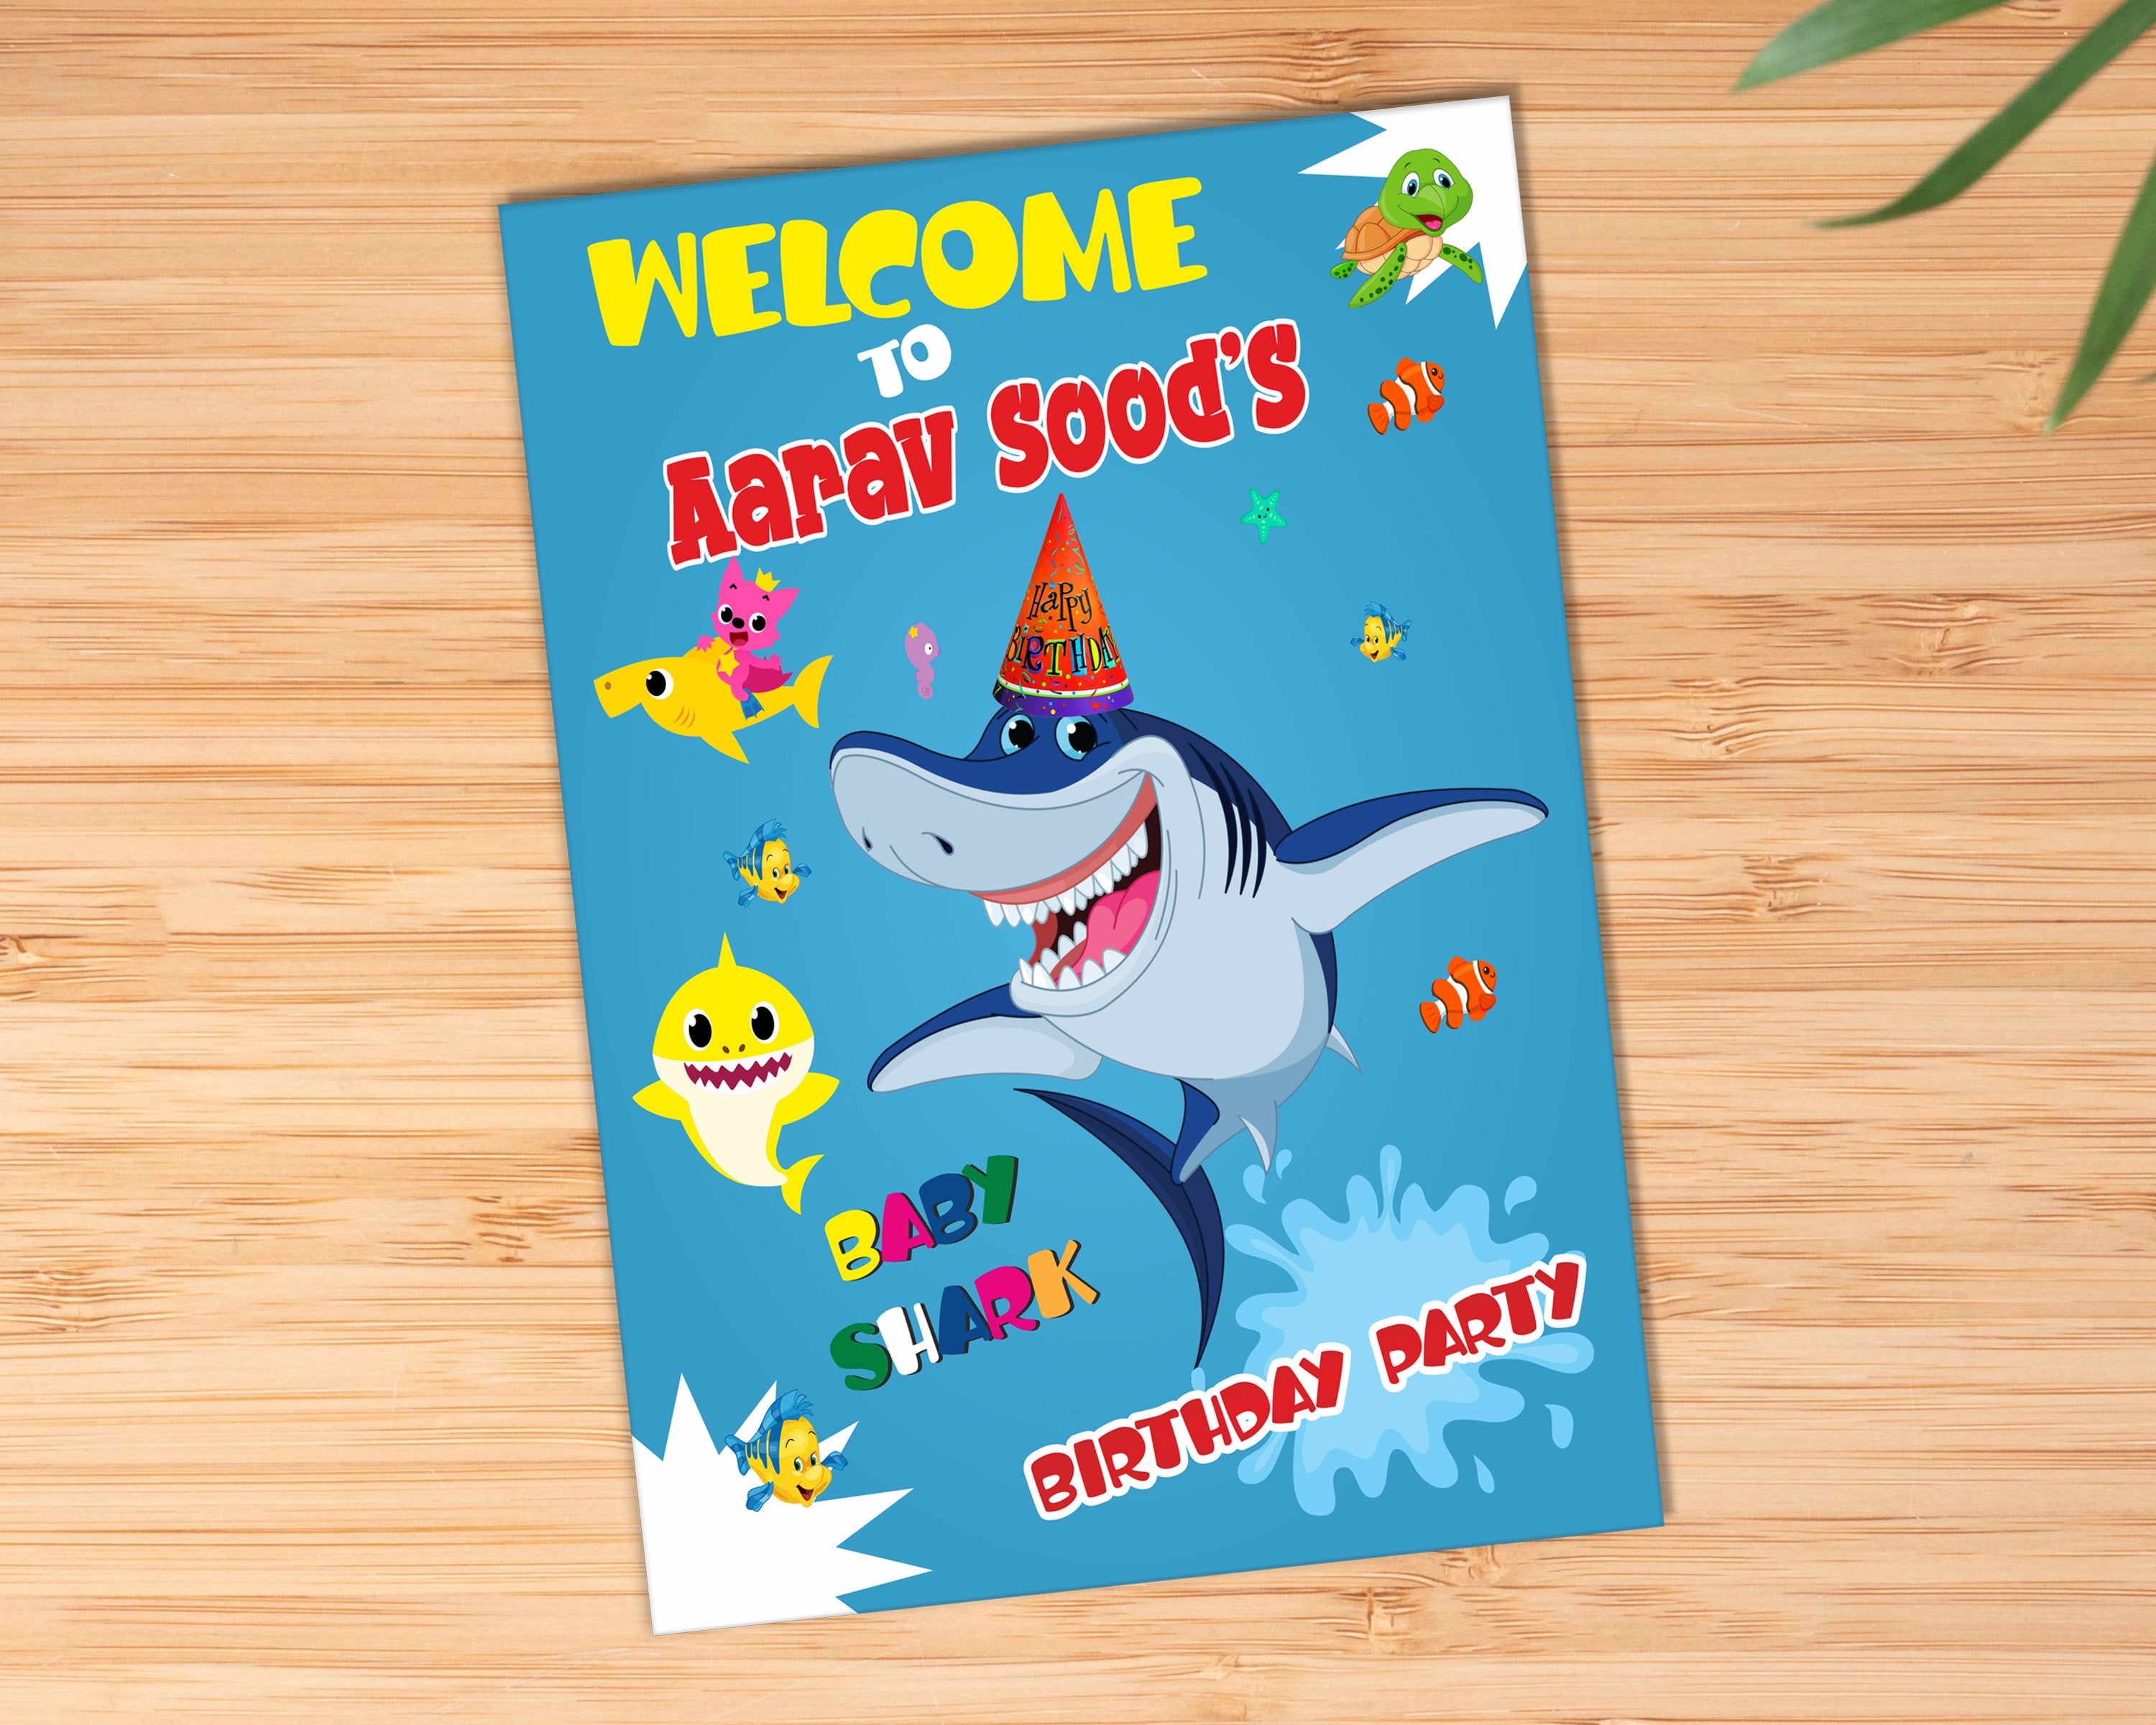 Shark Theme Welcome Board